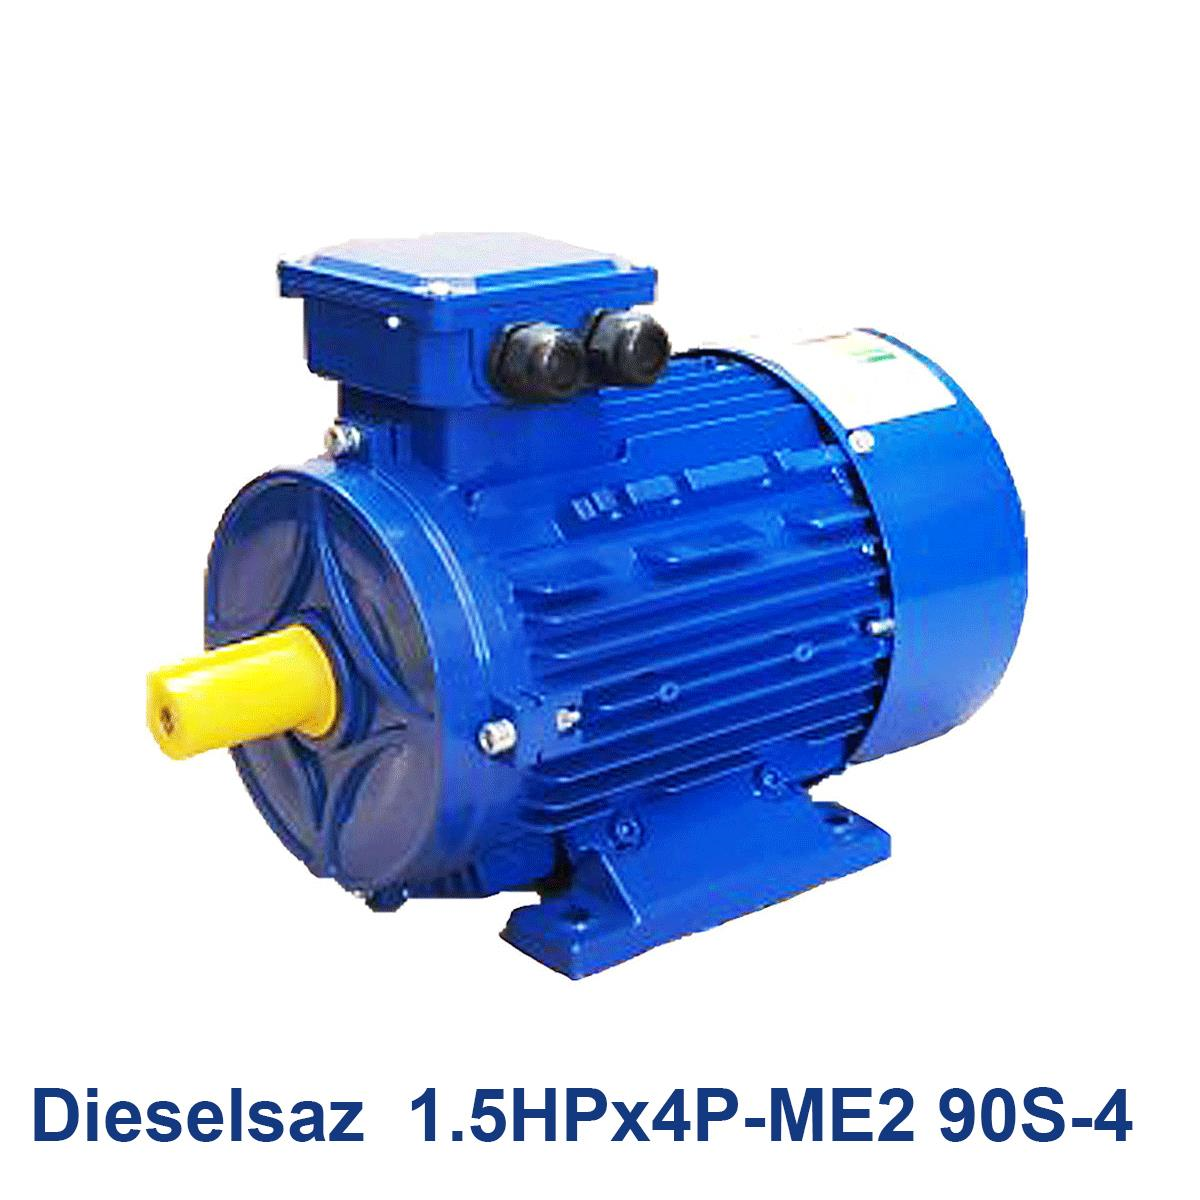 Dieselsaz--1.5HPx4P-ME2-90S-4